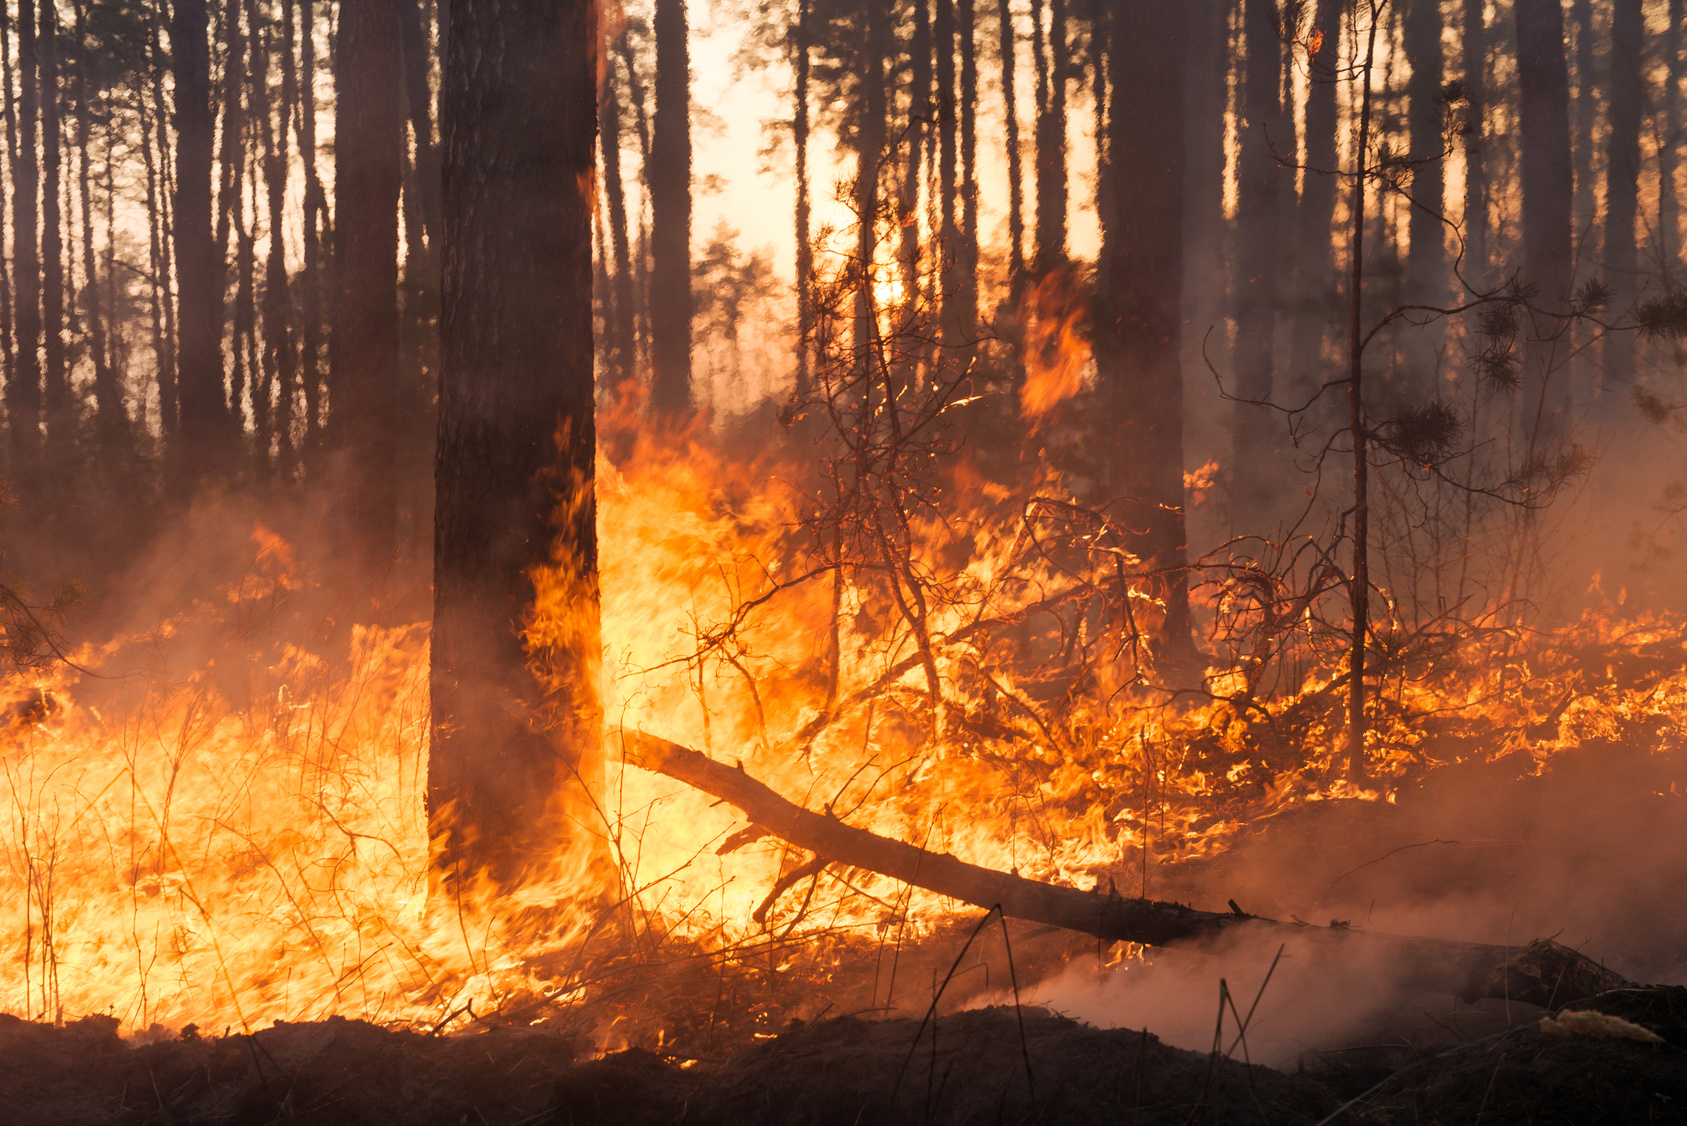 Incendio in un bosco o foresta; deforestazione